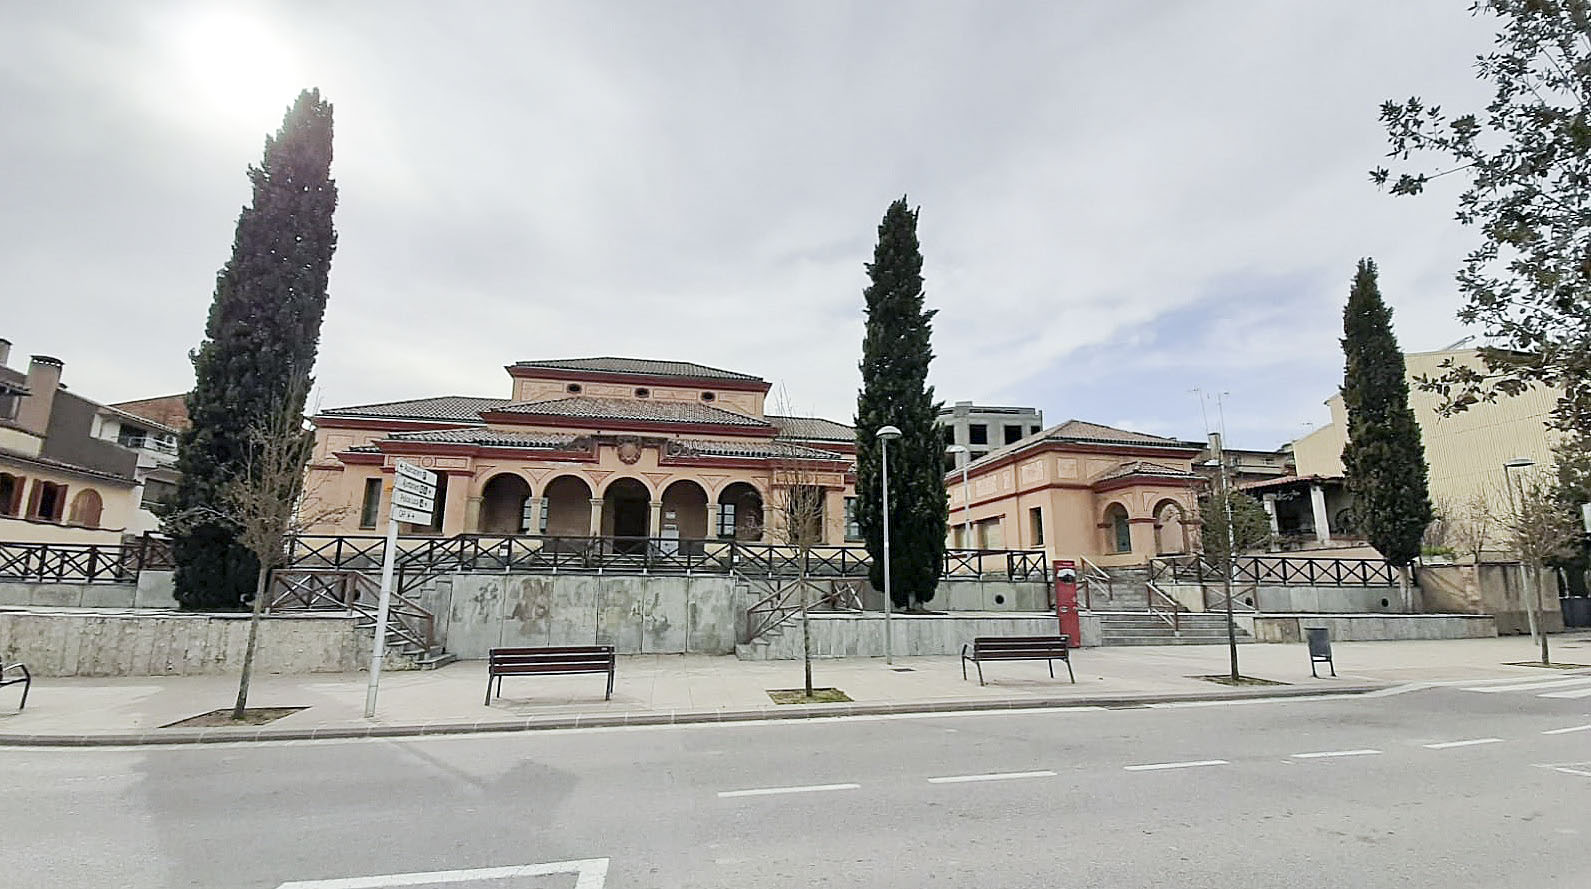 Una vista general de la Biblioteca Caterina Figueras, amb l’edifici principal i el secundari que es podran millorar